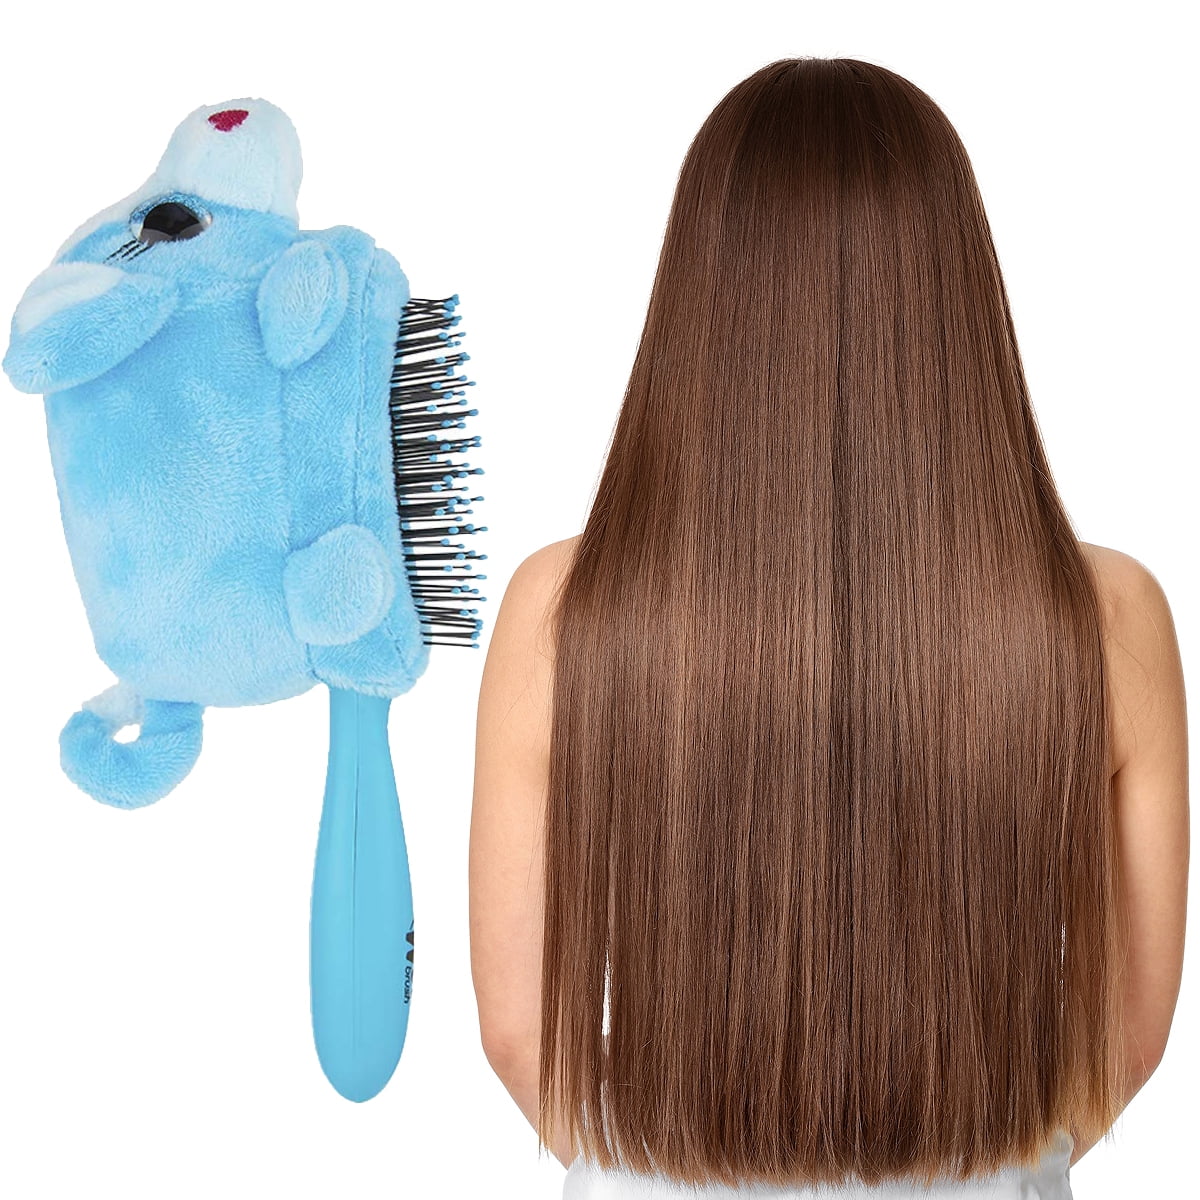 Ausletie Wet Hair Brushes for Kids, Girls Detangling Brush for